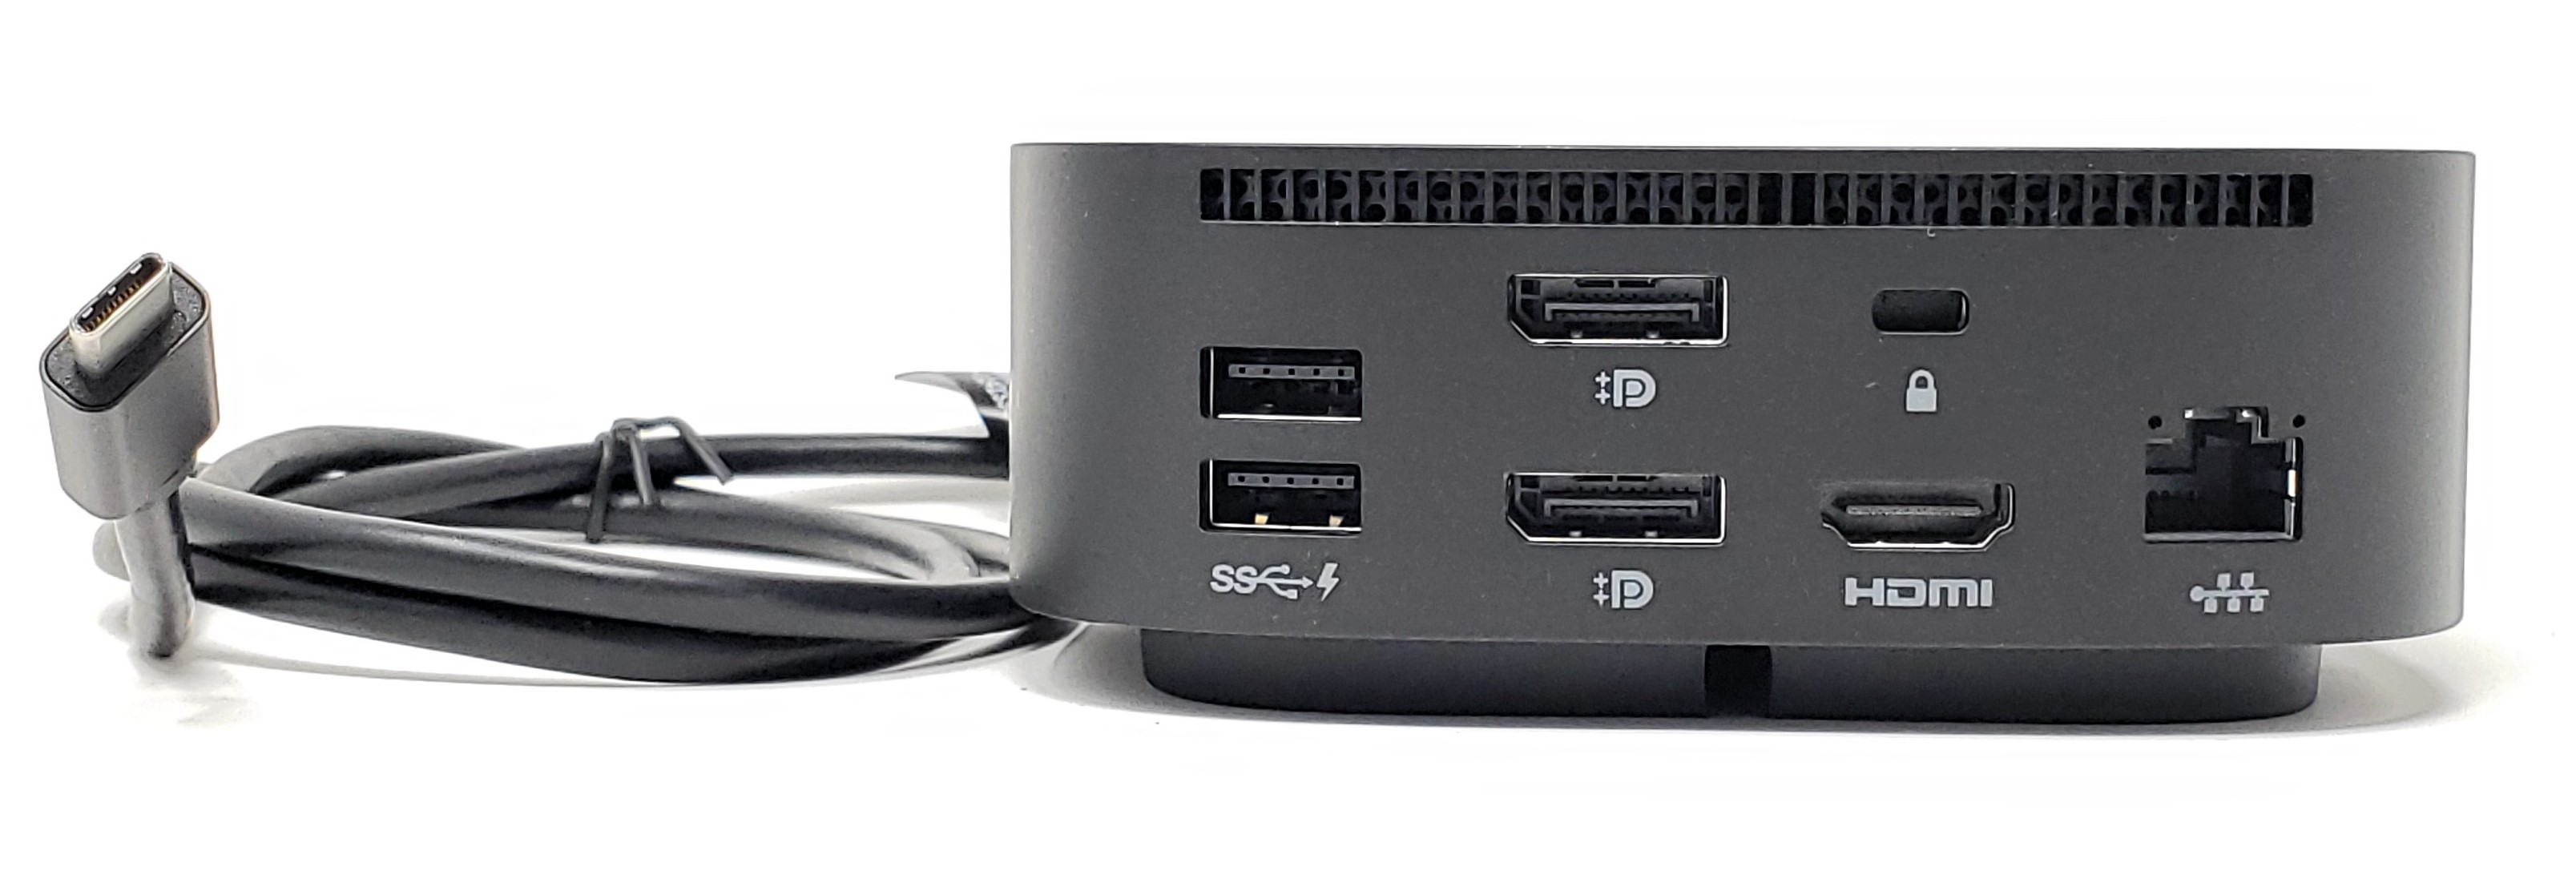 USB-C Dock G5 Docking Station w/ 100W Power Delivery - Refurbished